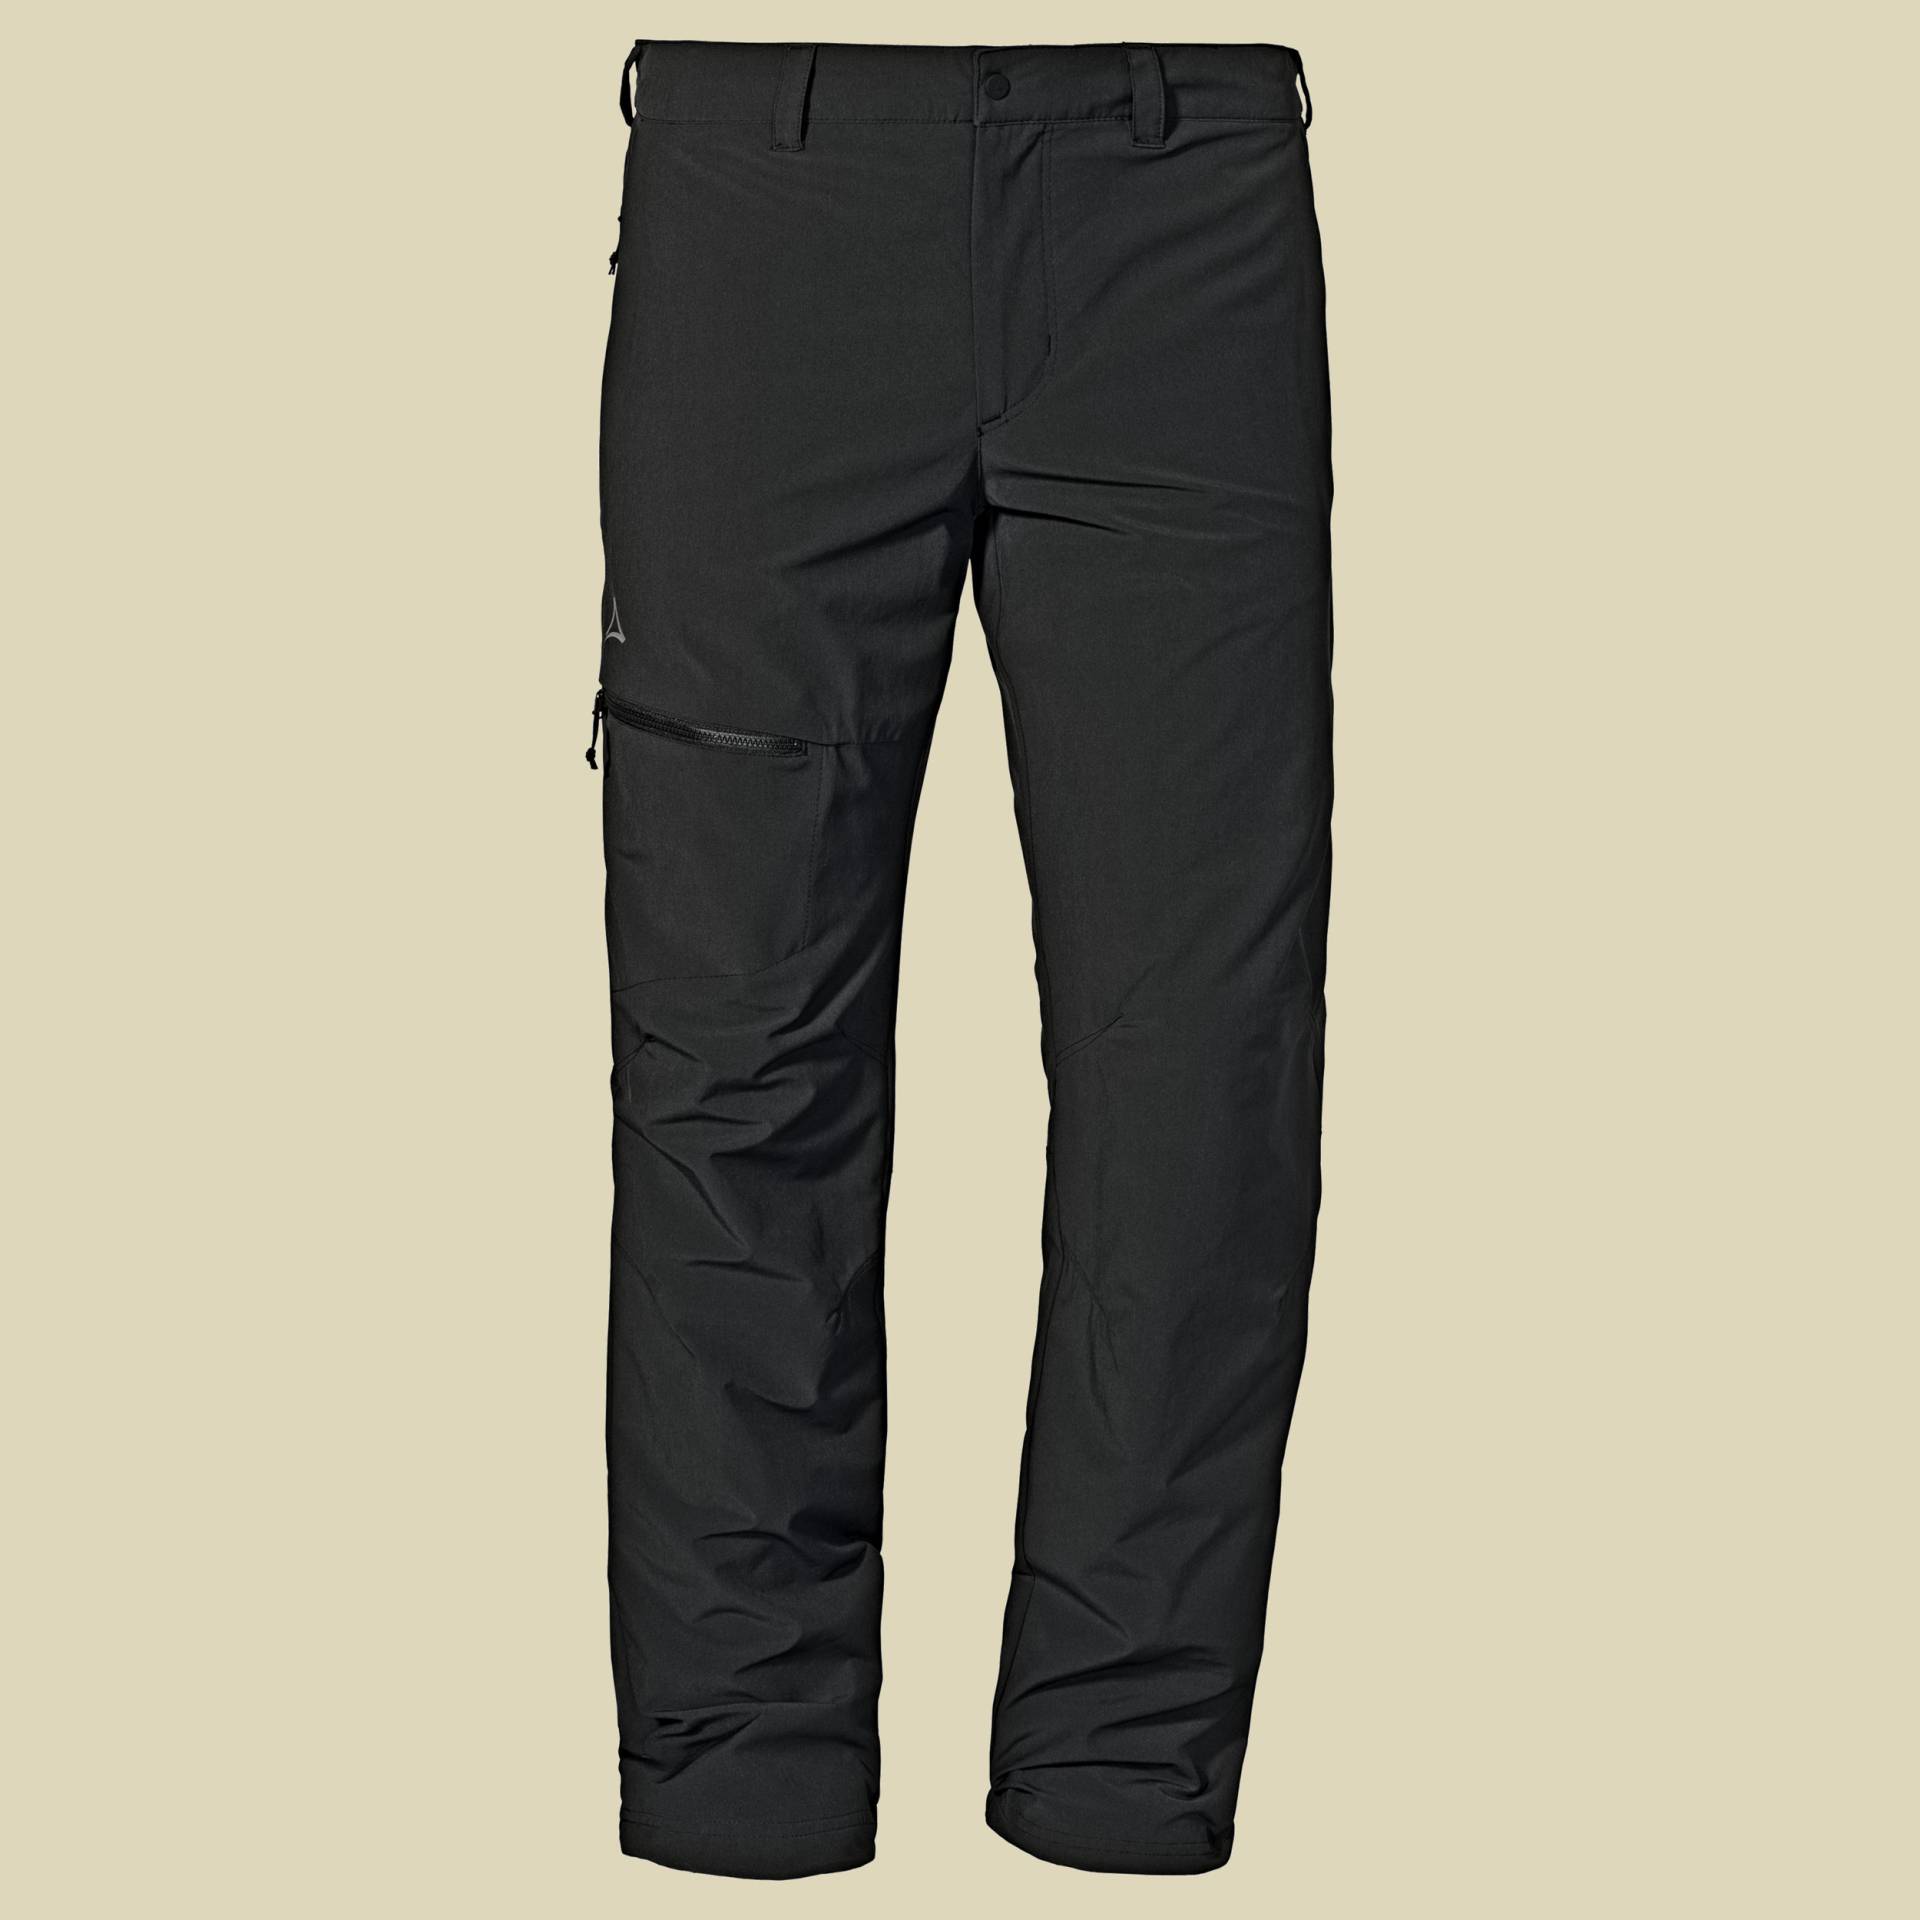 Pants Koper1 Warm Men Größe 56 Farbe black von Schöffel